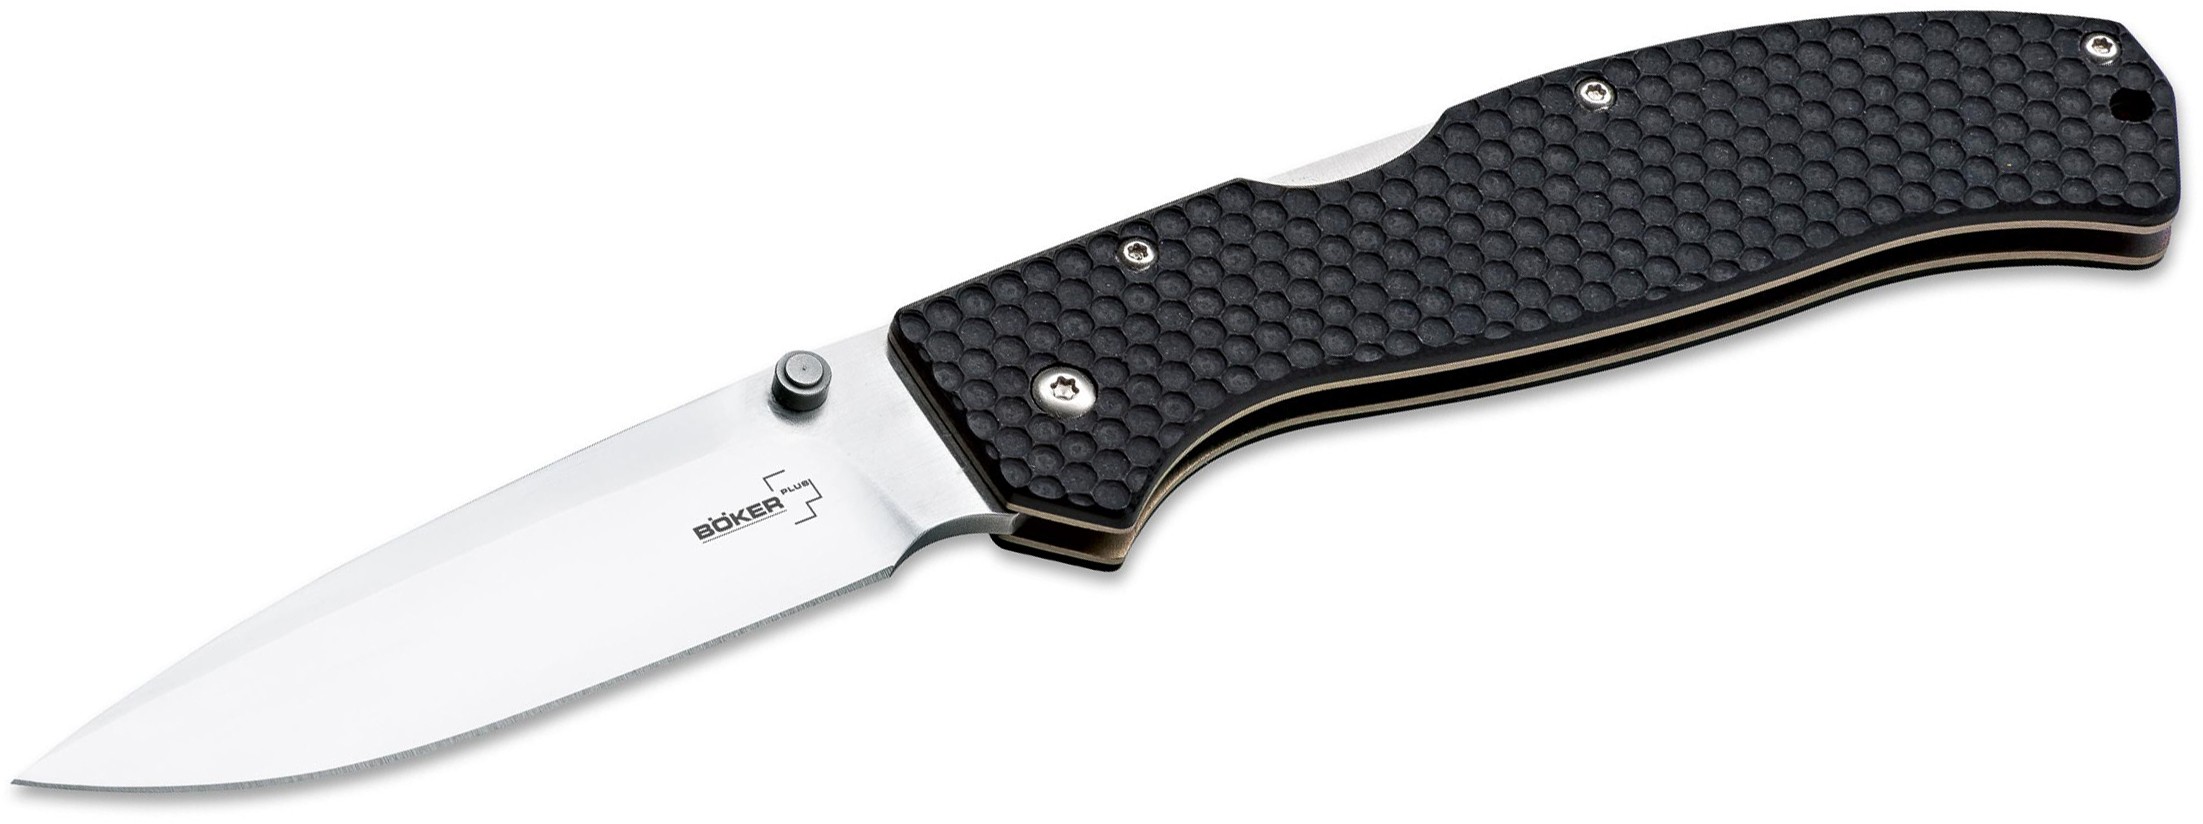 Нож Boker Plus Honeycomb складной сталь 440C рукоять G10 - фото 1